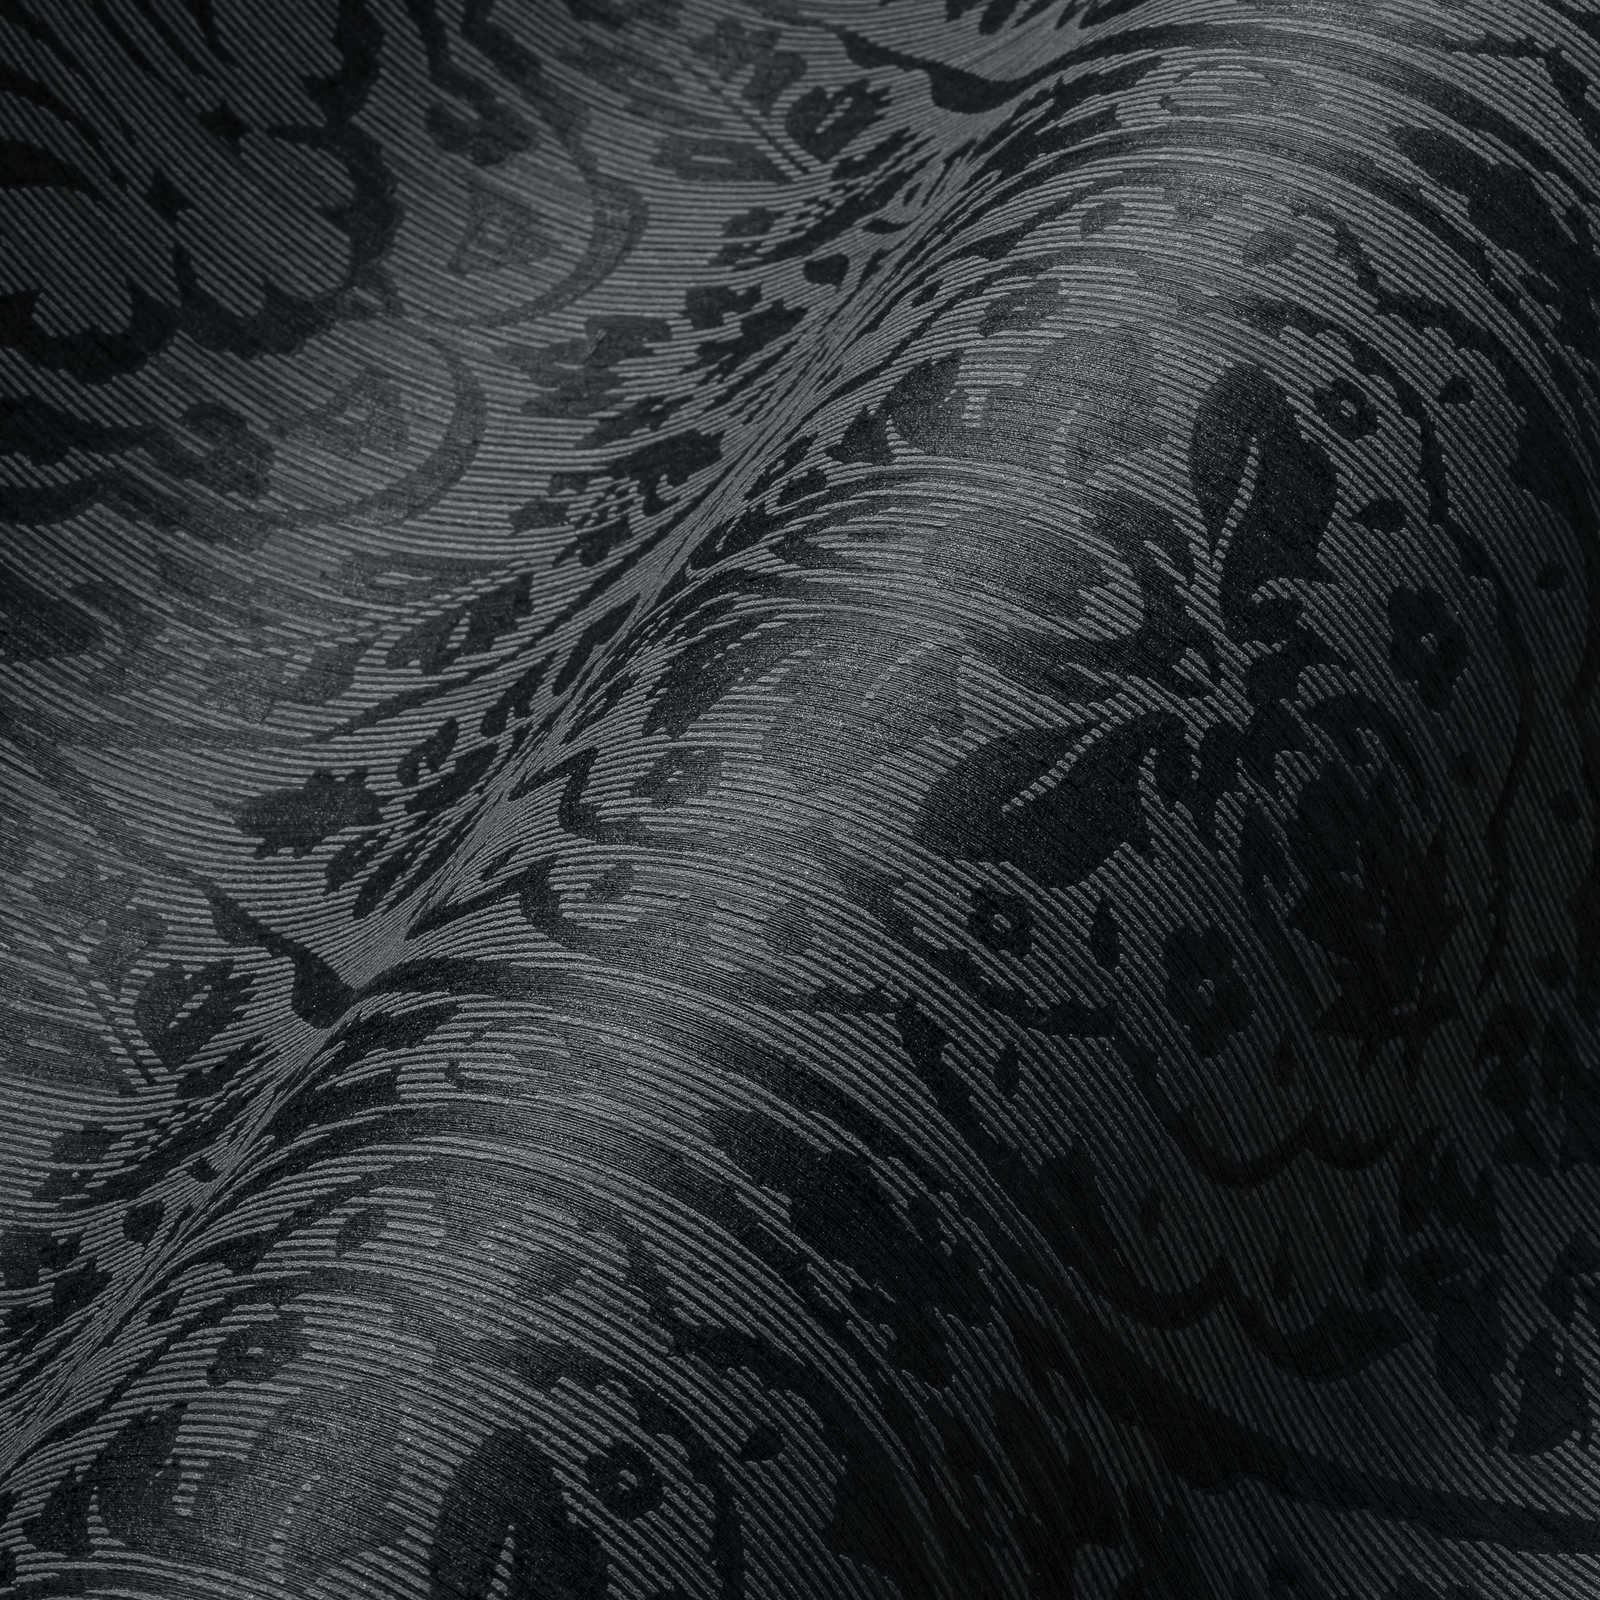             Bloemenornament behang in koloniale stijl - grijs, zwart
        